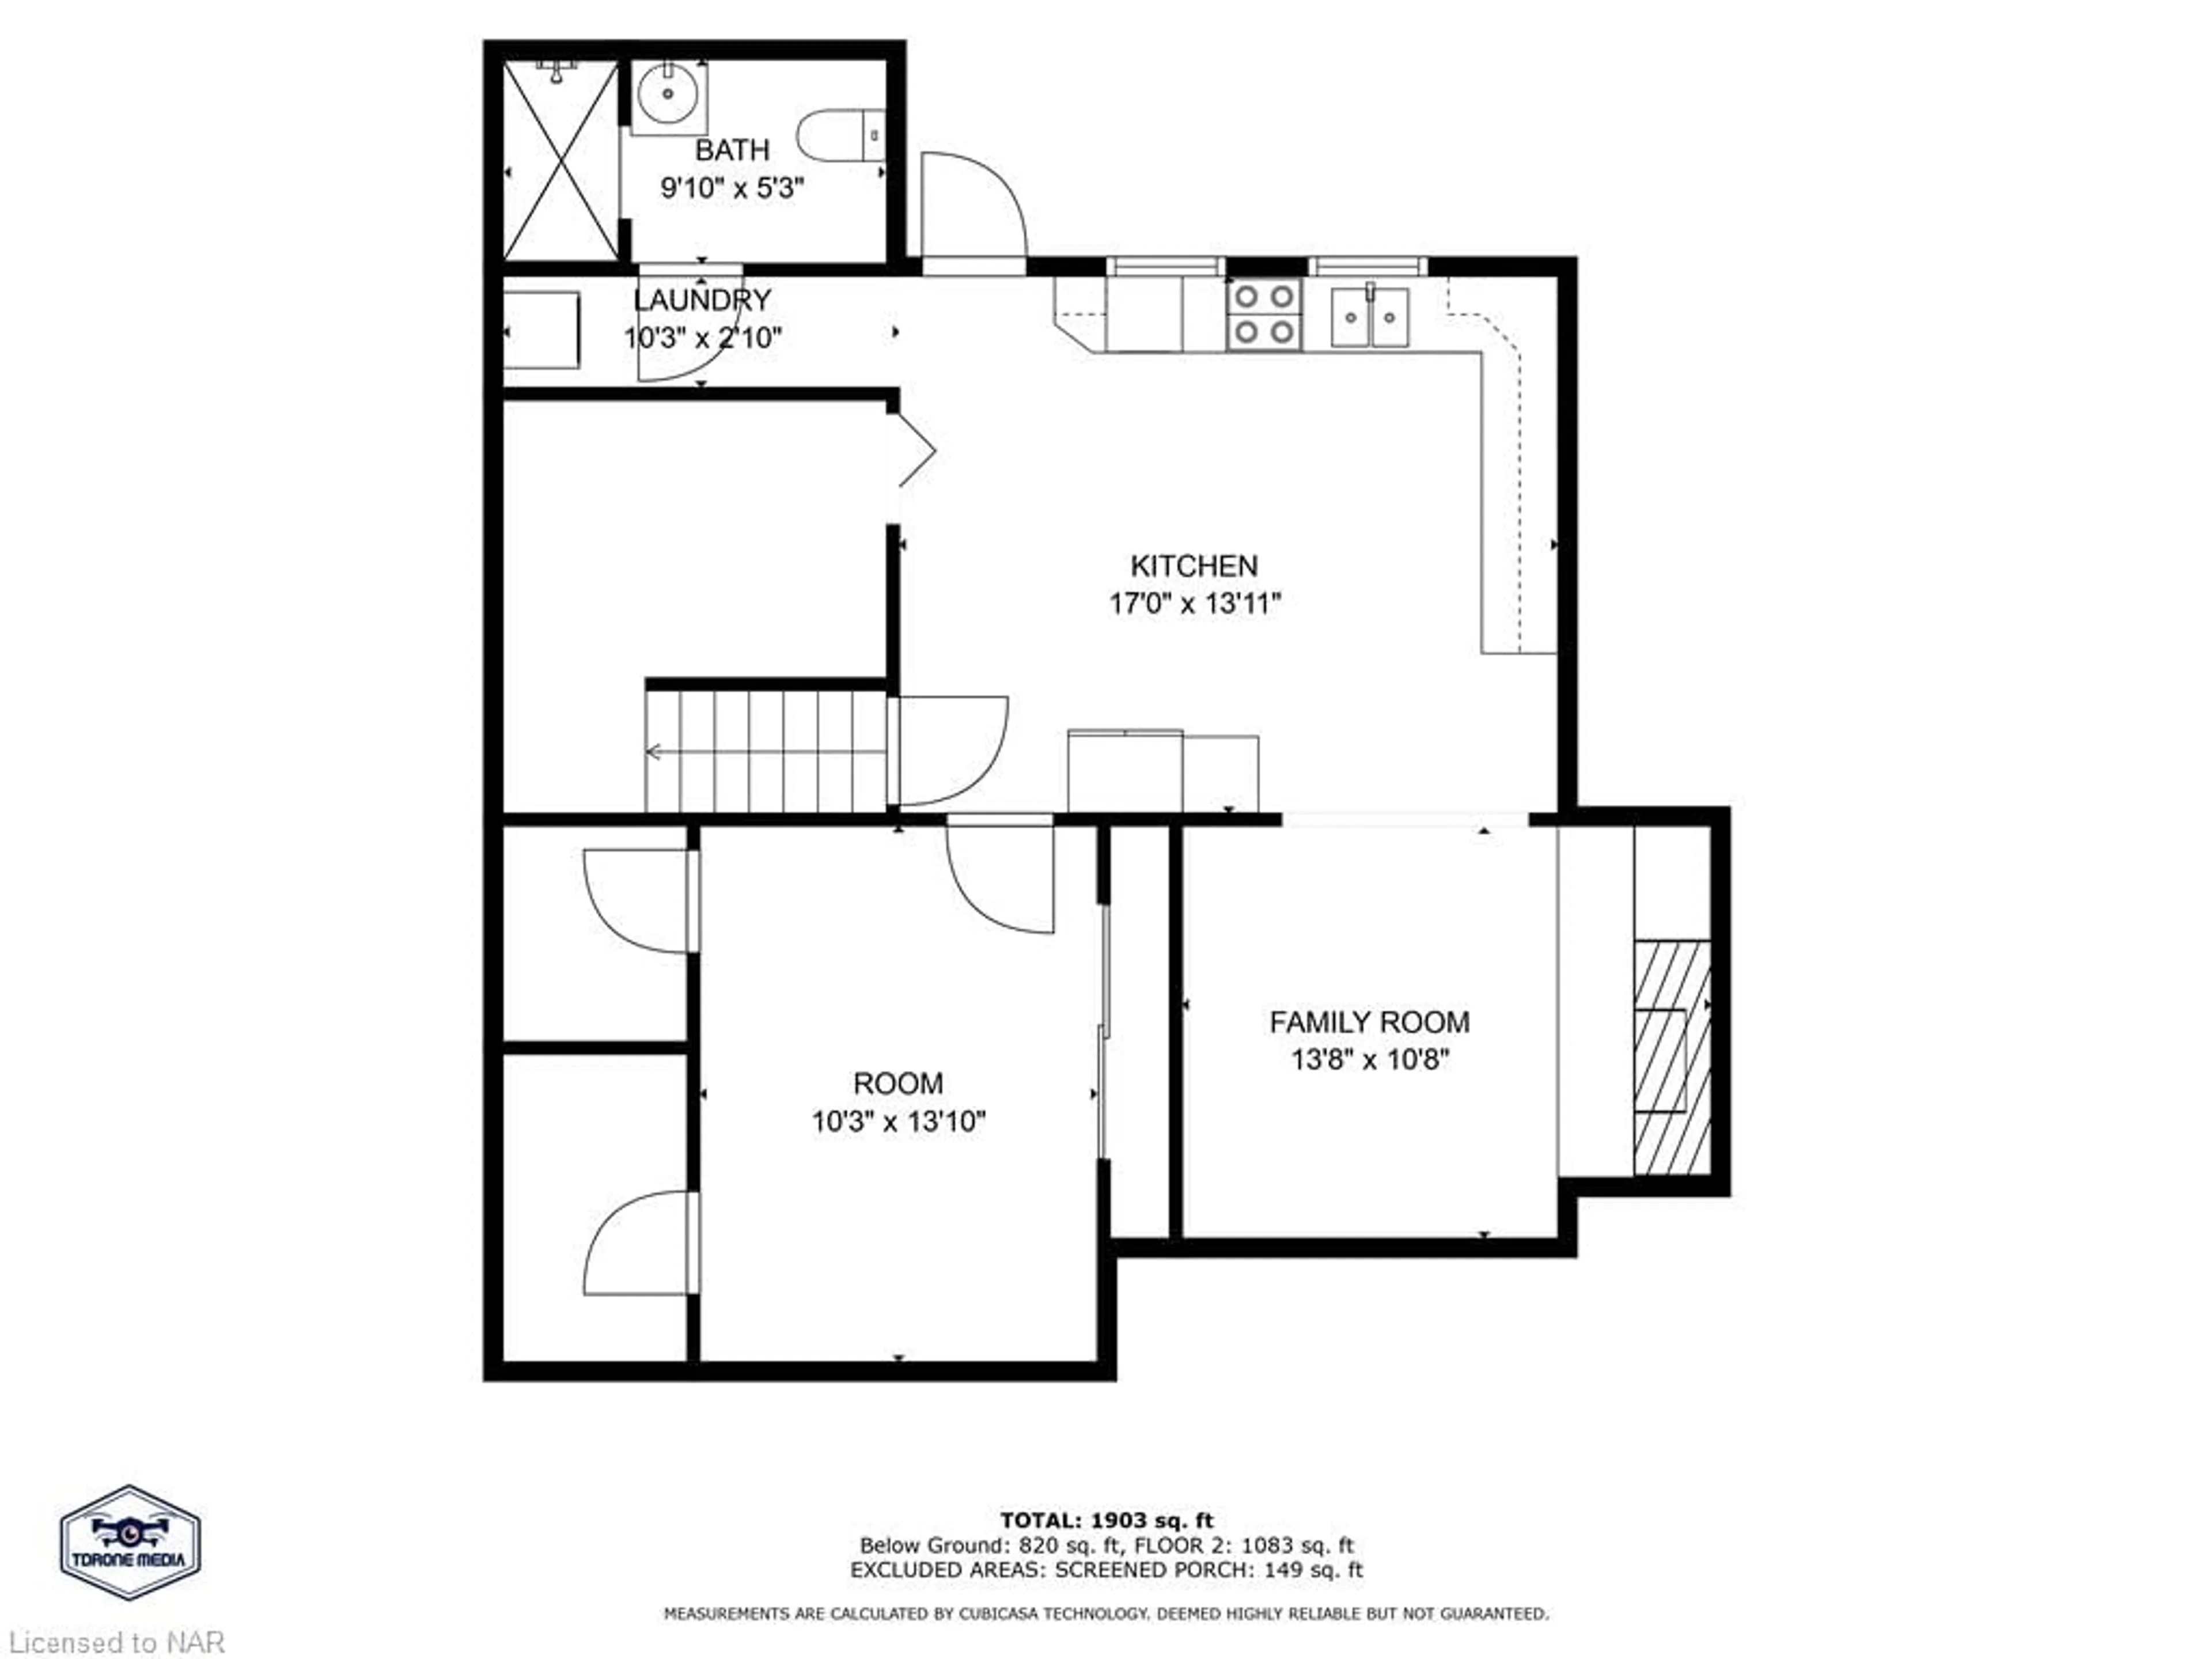 Floor plan for 2692 Chippawa Rd, Port Colborne Ontario L3K 5V5